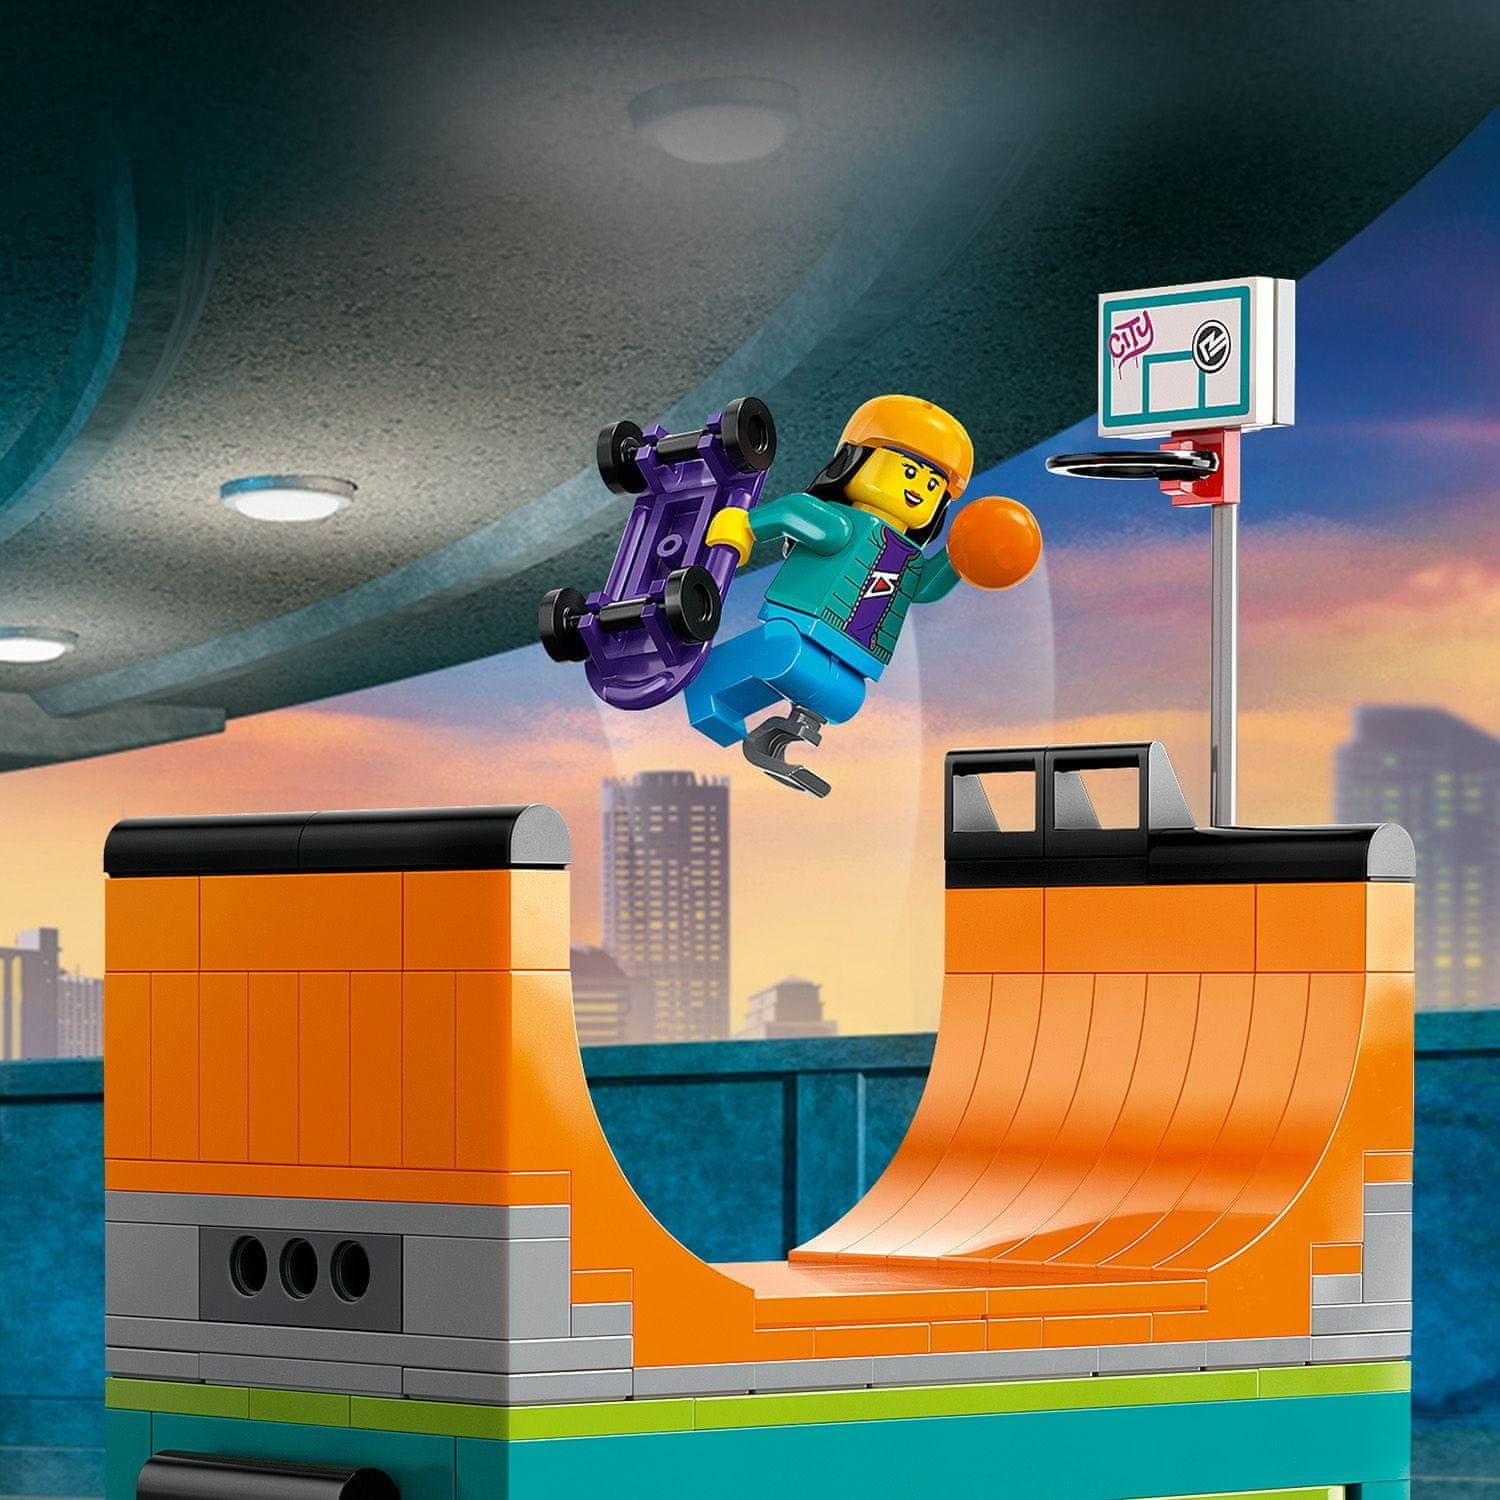 LEGO City 60364 Pouliční skatepark